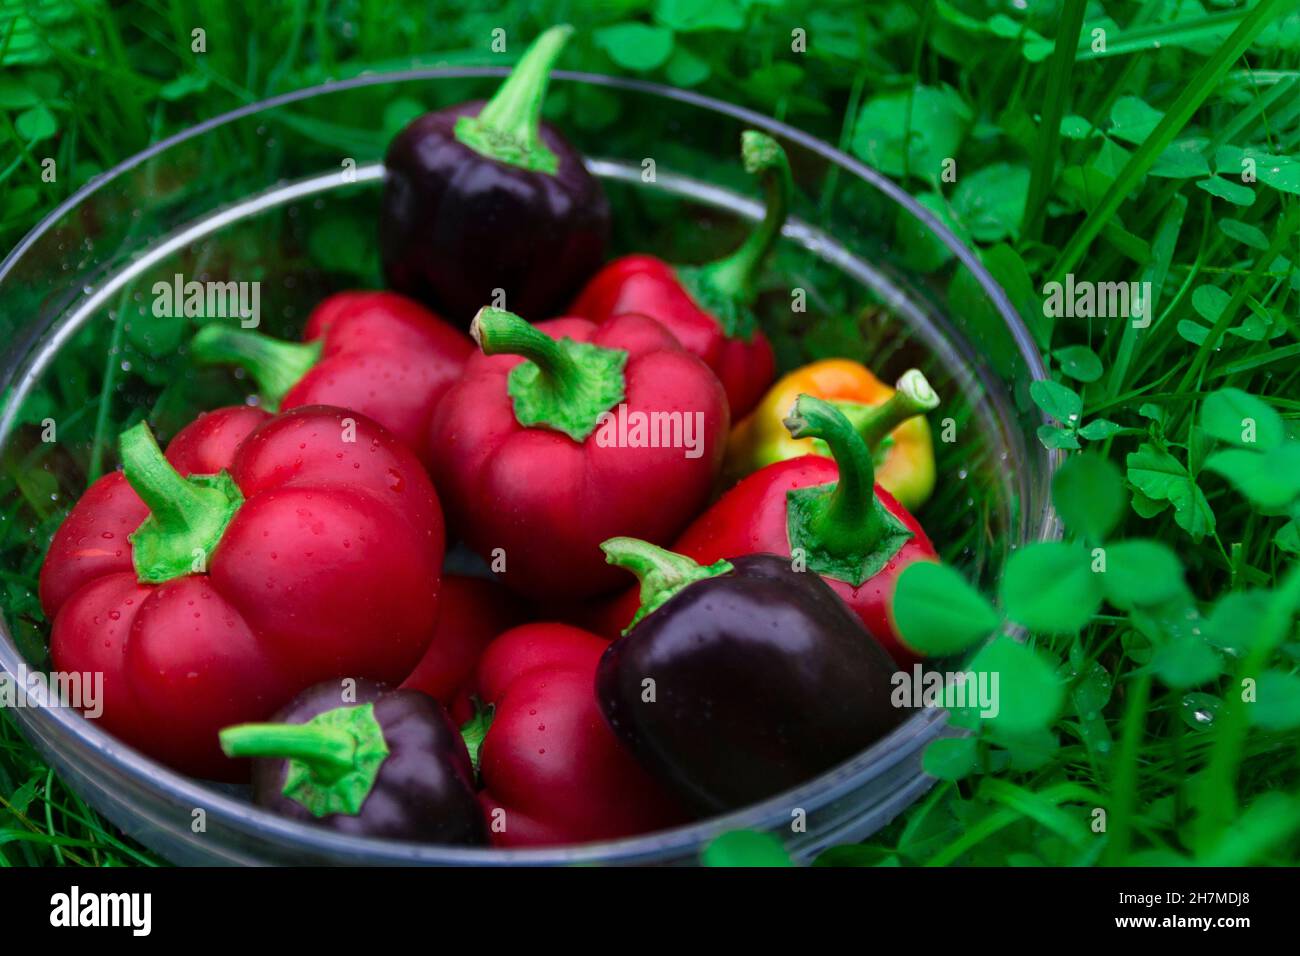 Beaucoup de différentes couleurs de poivron doux dans un panier en verre sur l'herbe verte.Lavage des légumes pour une salade d'été, récolte fraîche d'un jardin de légumes Banque D'Images